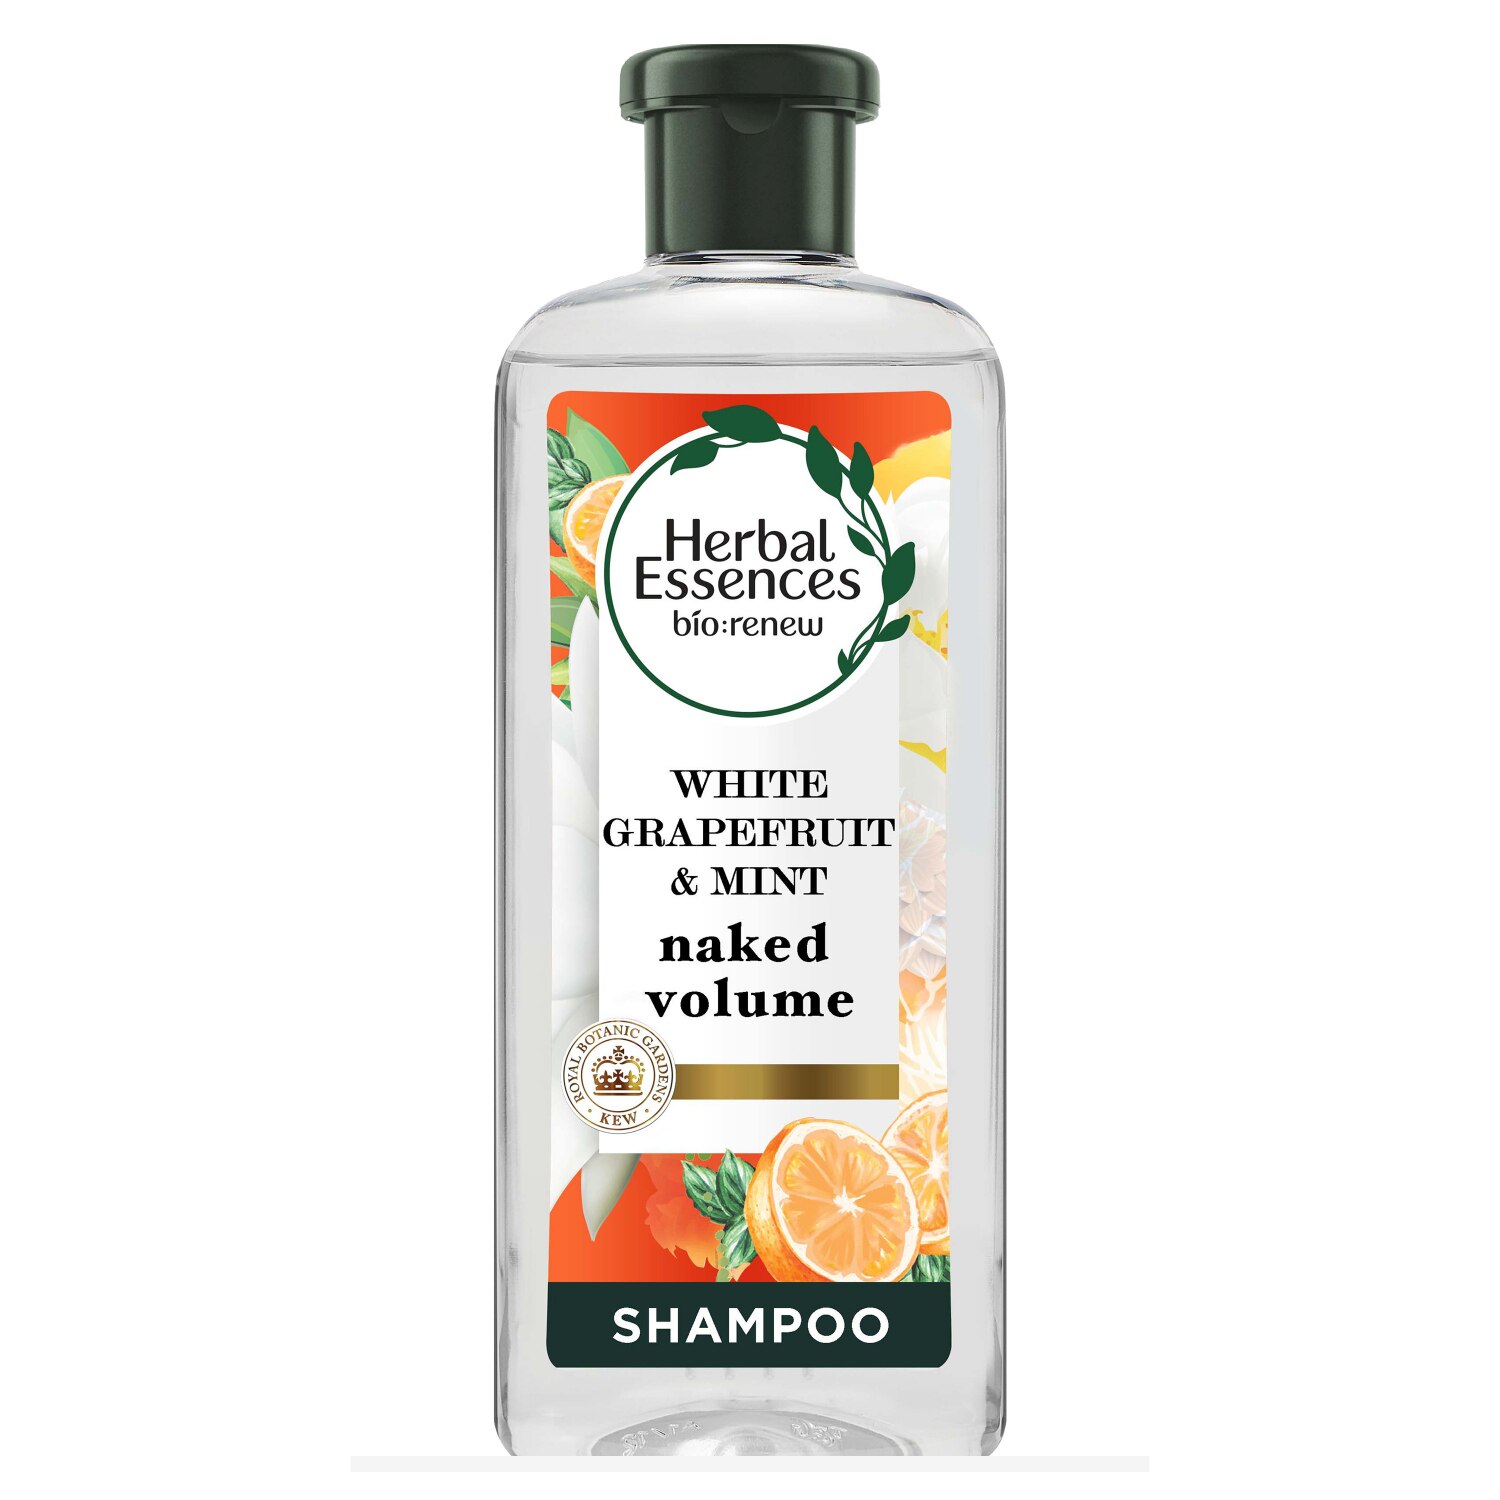 Herbal Essences bio:renew - Champú, White Grapefruit & Mosa Mint Naked Volume, 13.5 oz